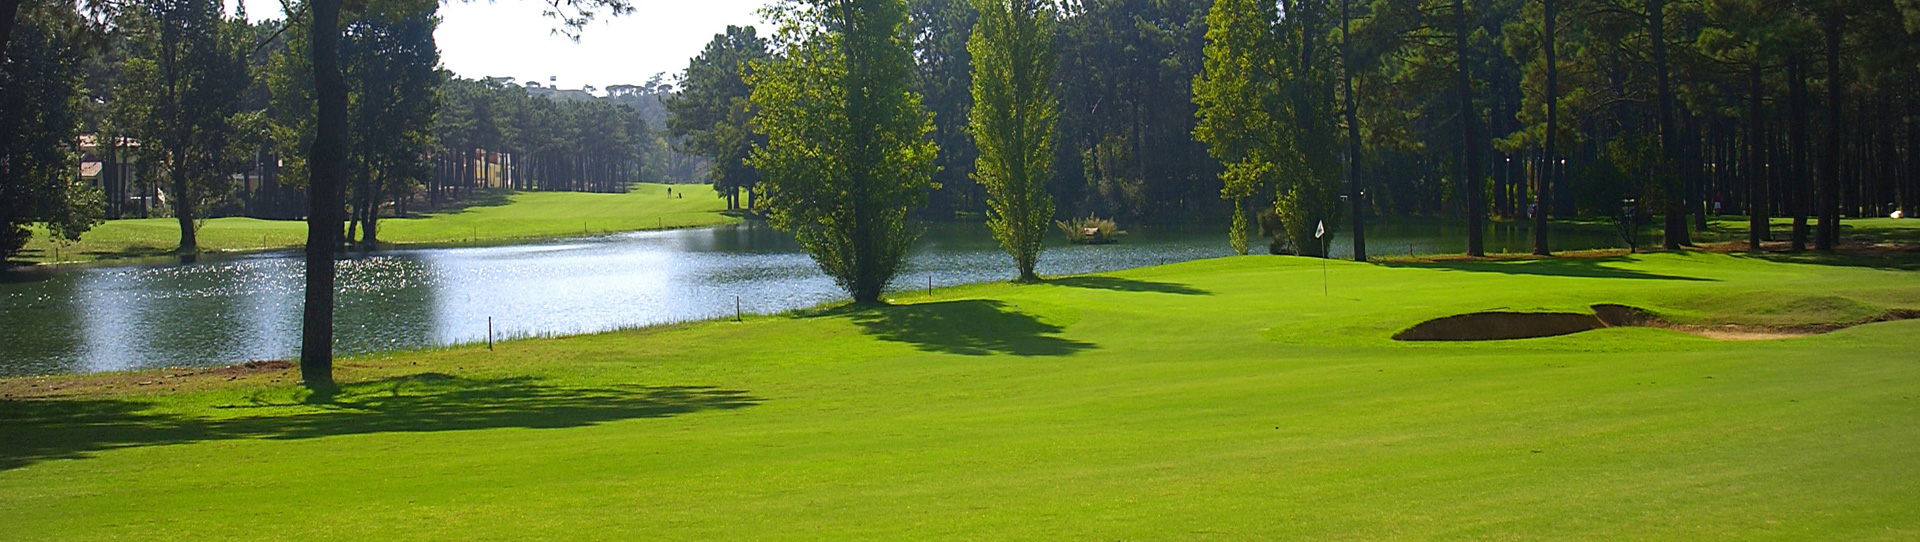 Portugal golf courses - Aroeira Pines Classic Golf Course (ex Aroeira I) - Photo 2